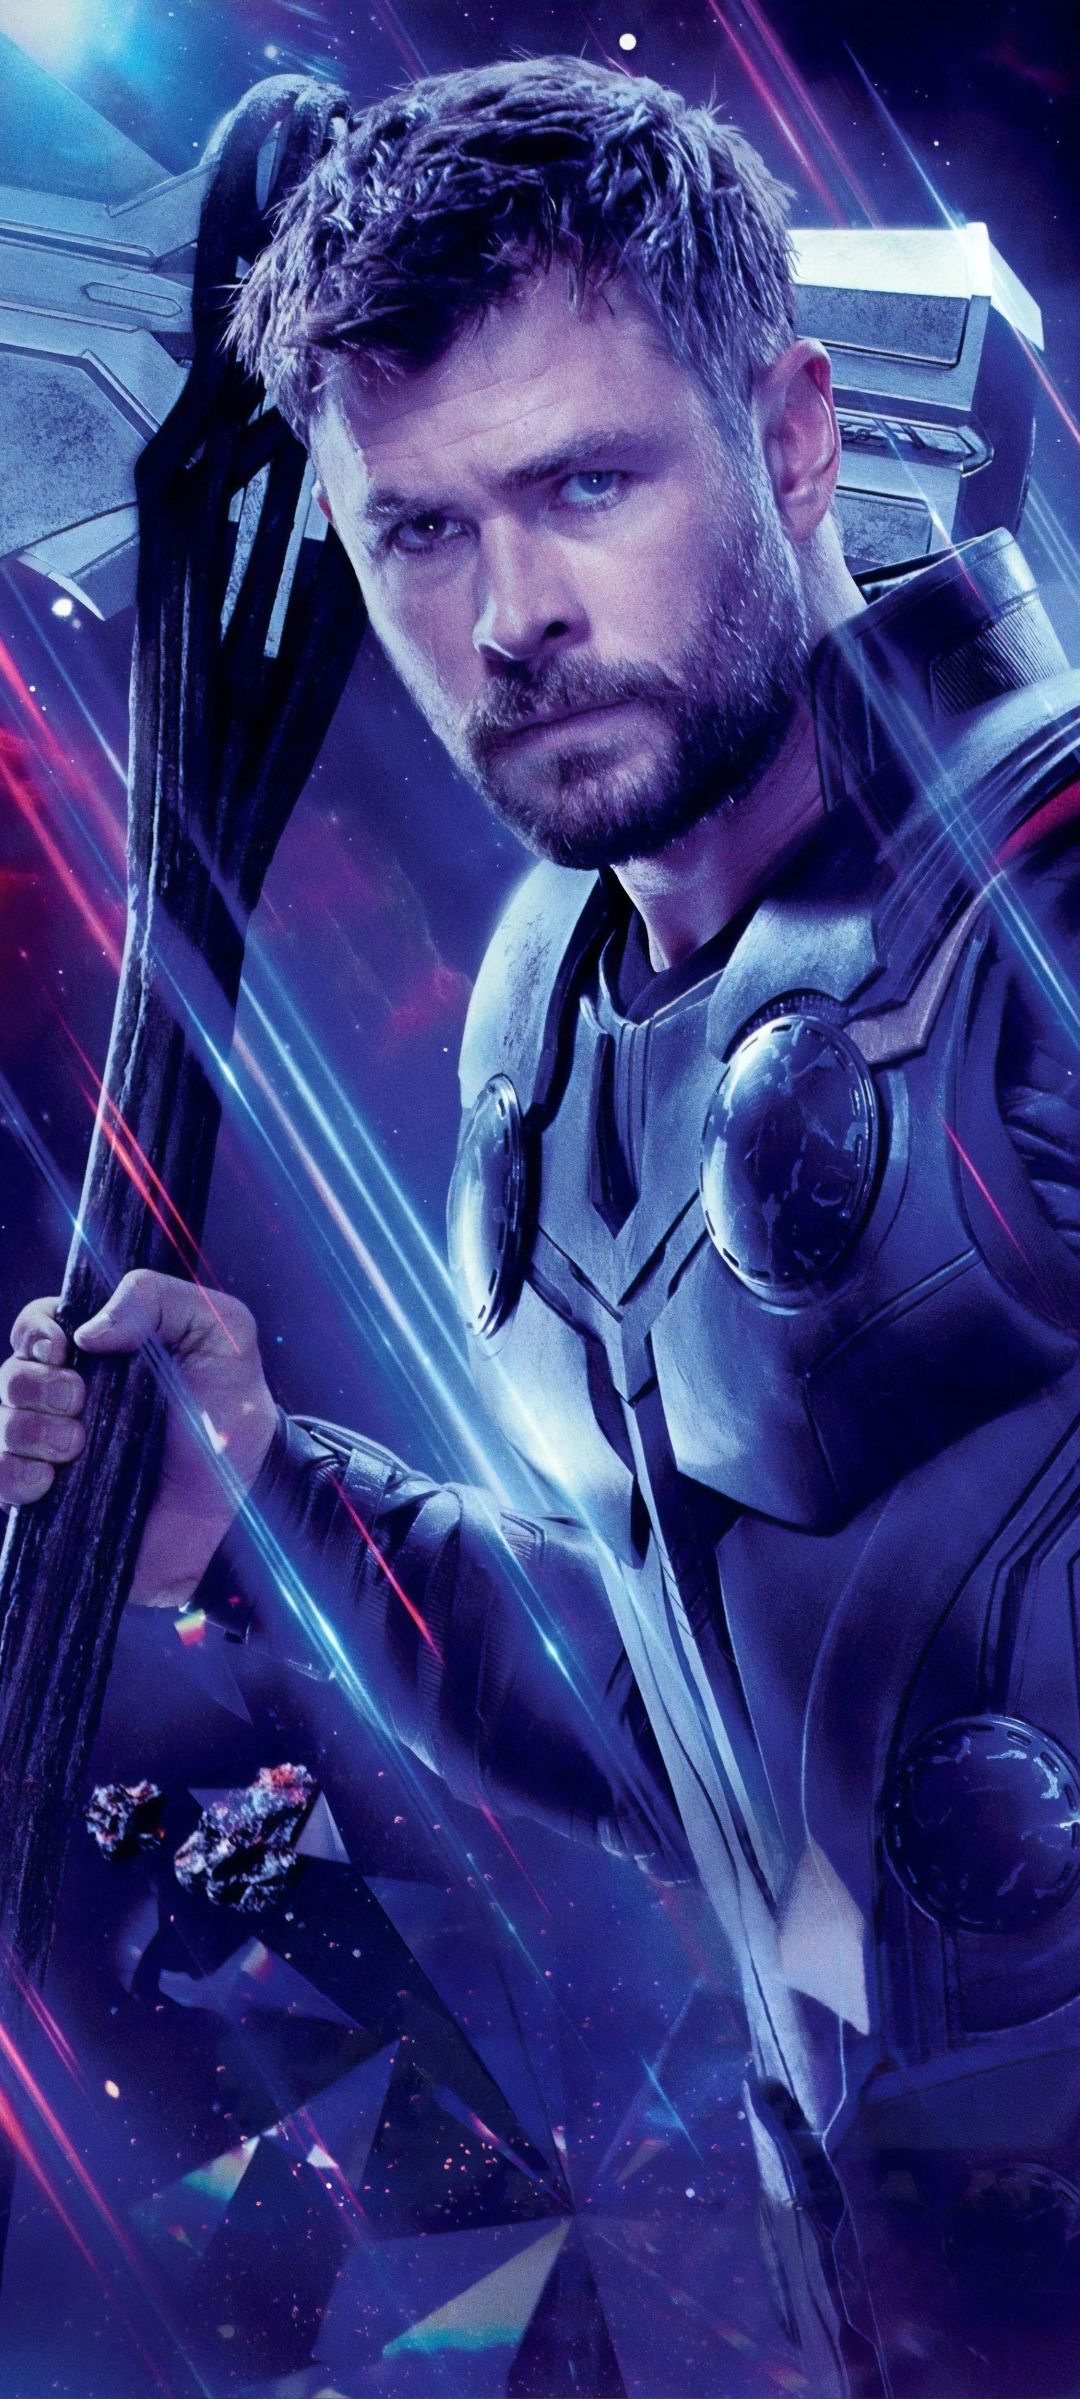 Thor in Avengers Endgame 1080x2400 Resolution Wallpaper